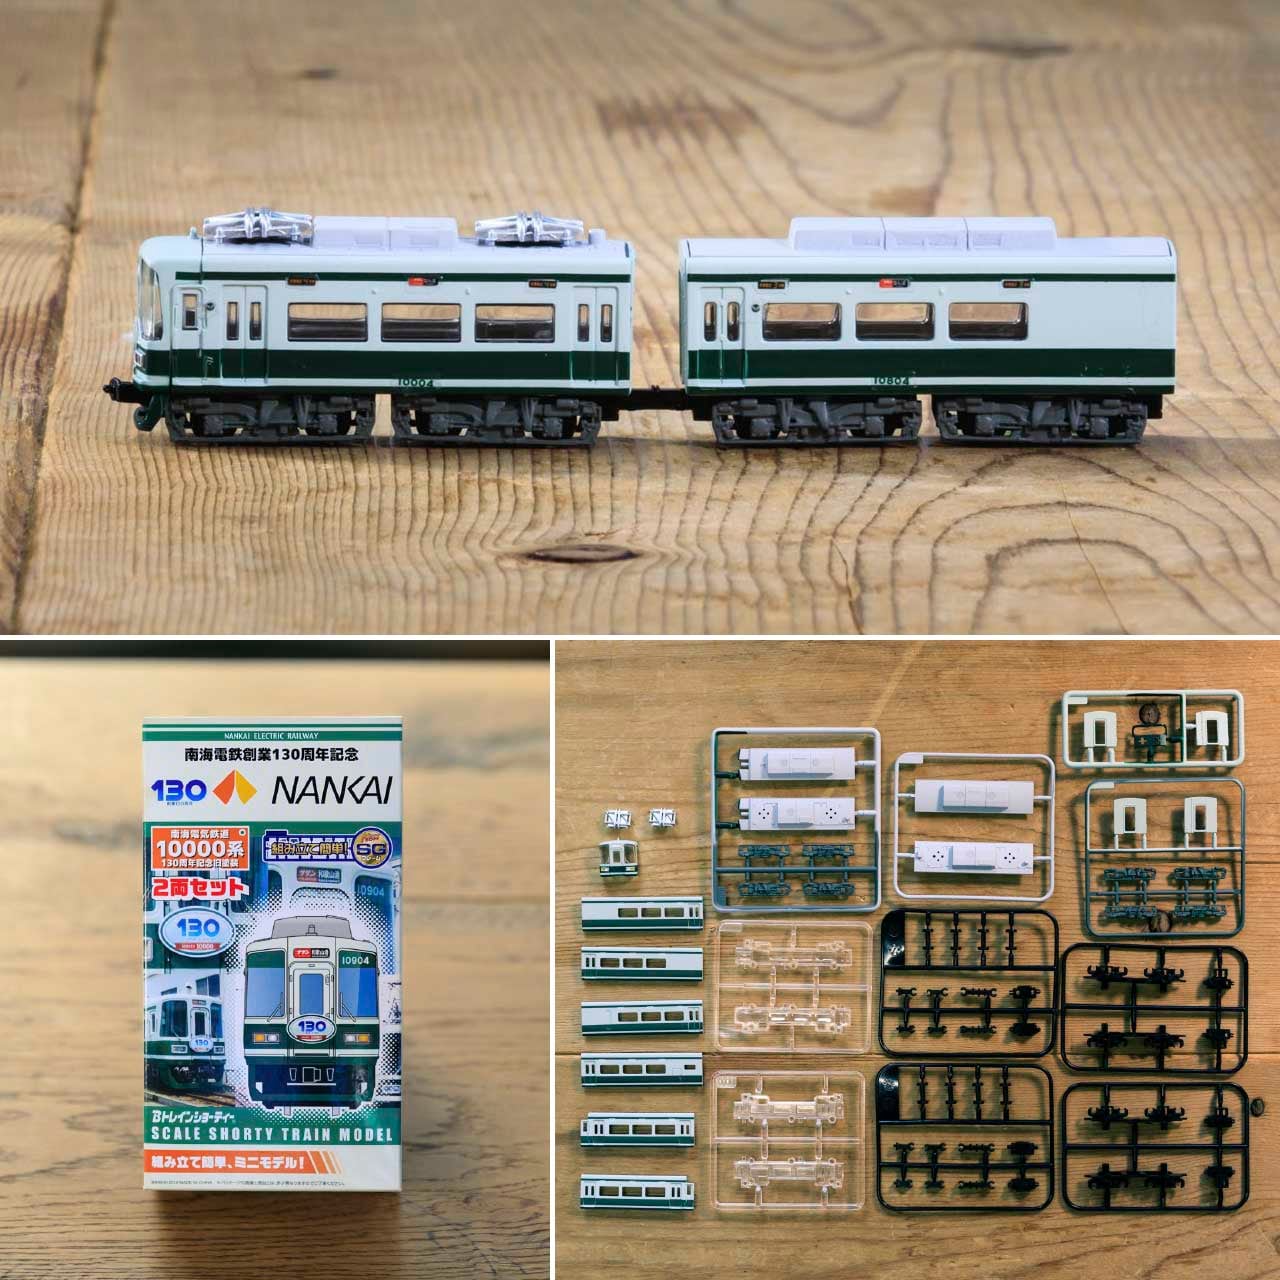 Bトレイン『南海 2000系』2両 - 鉄道模型